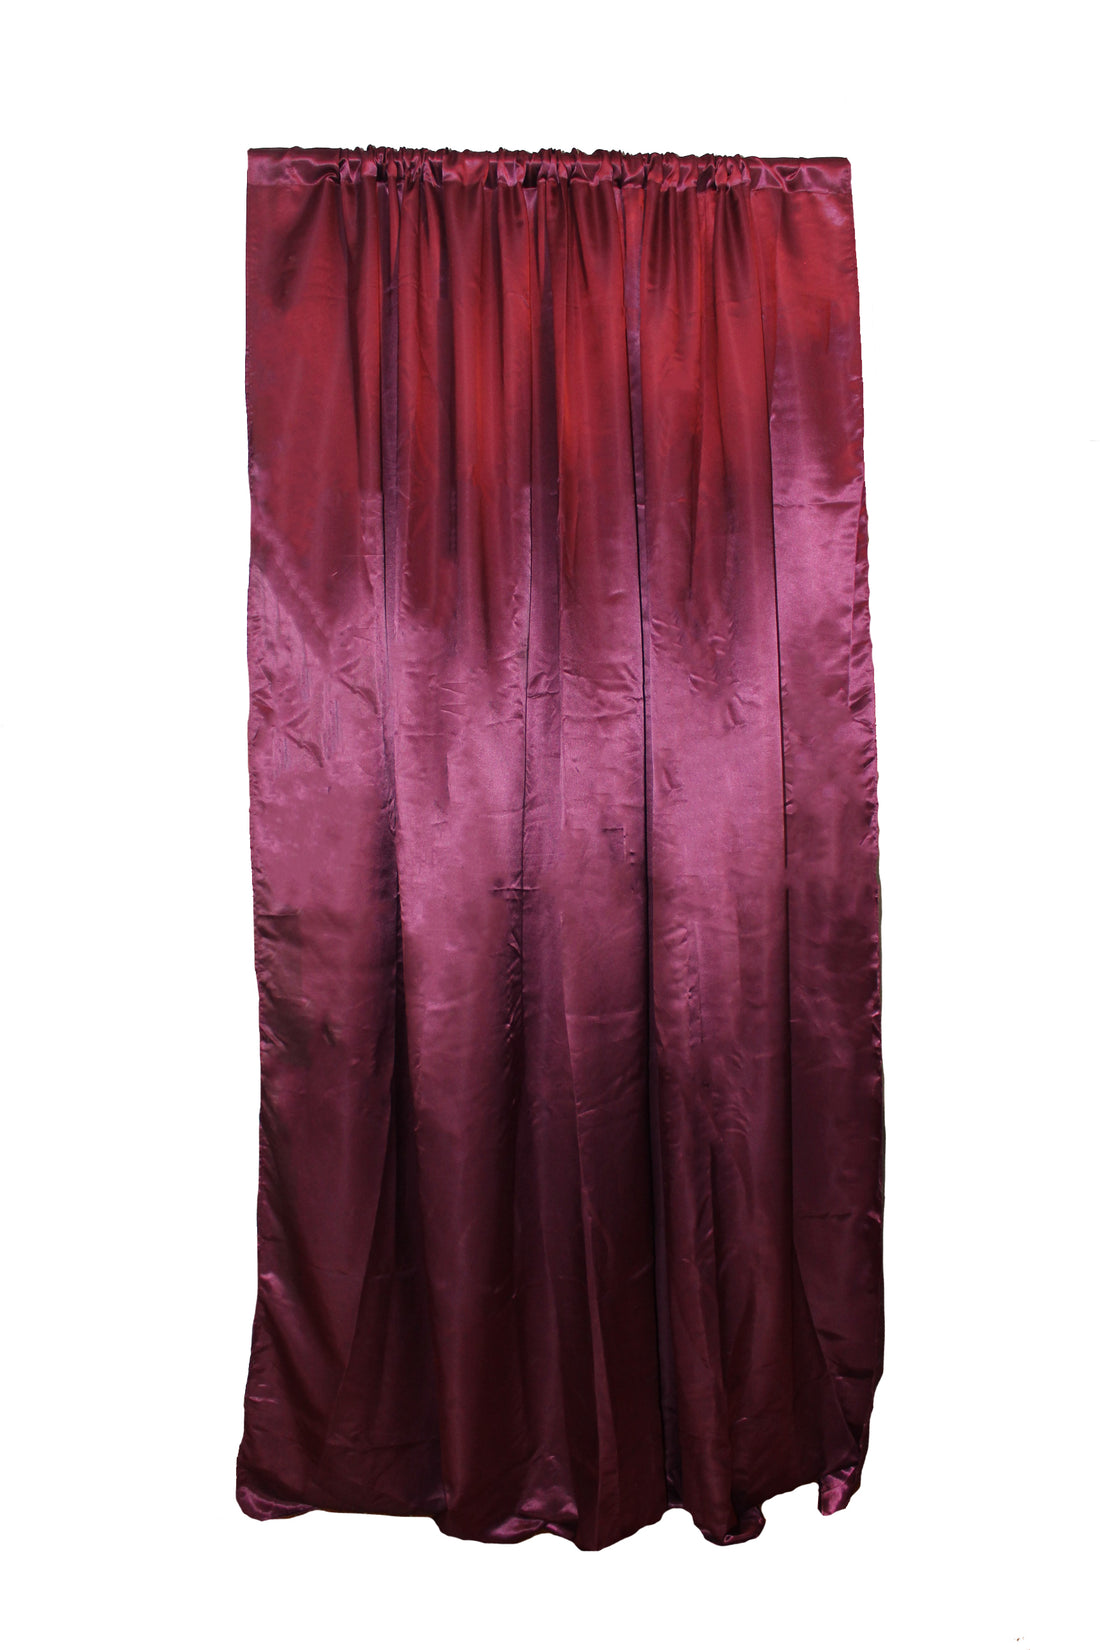 Satin Grape Curtain